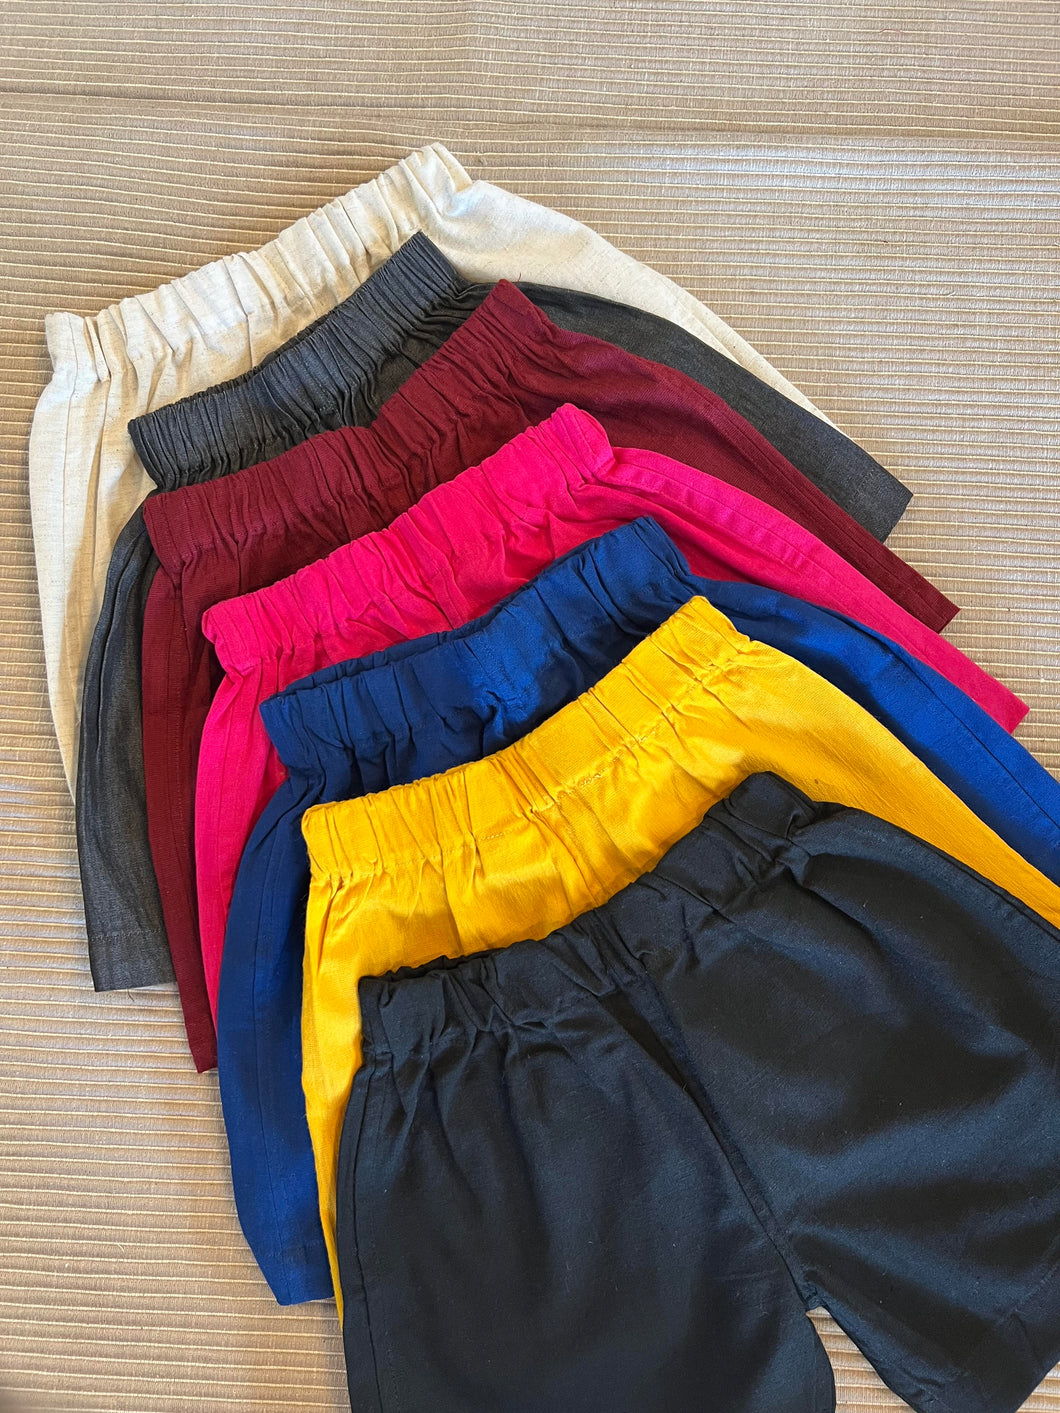 Klingaru Shorts -  All Colors